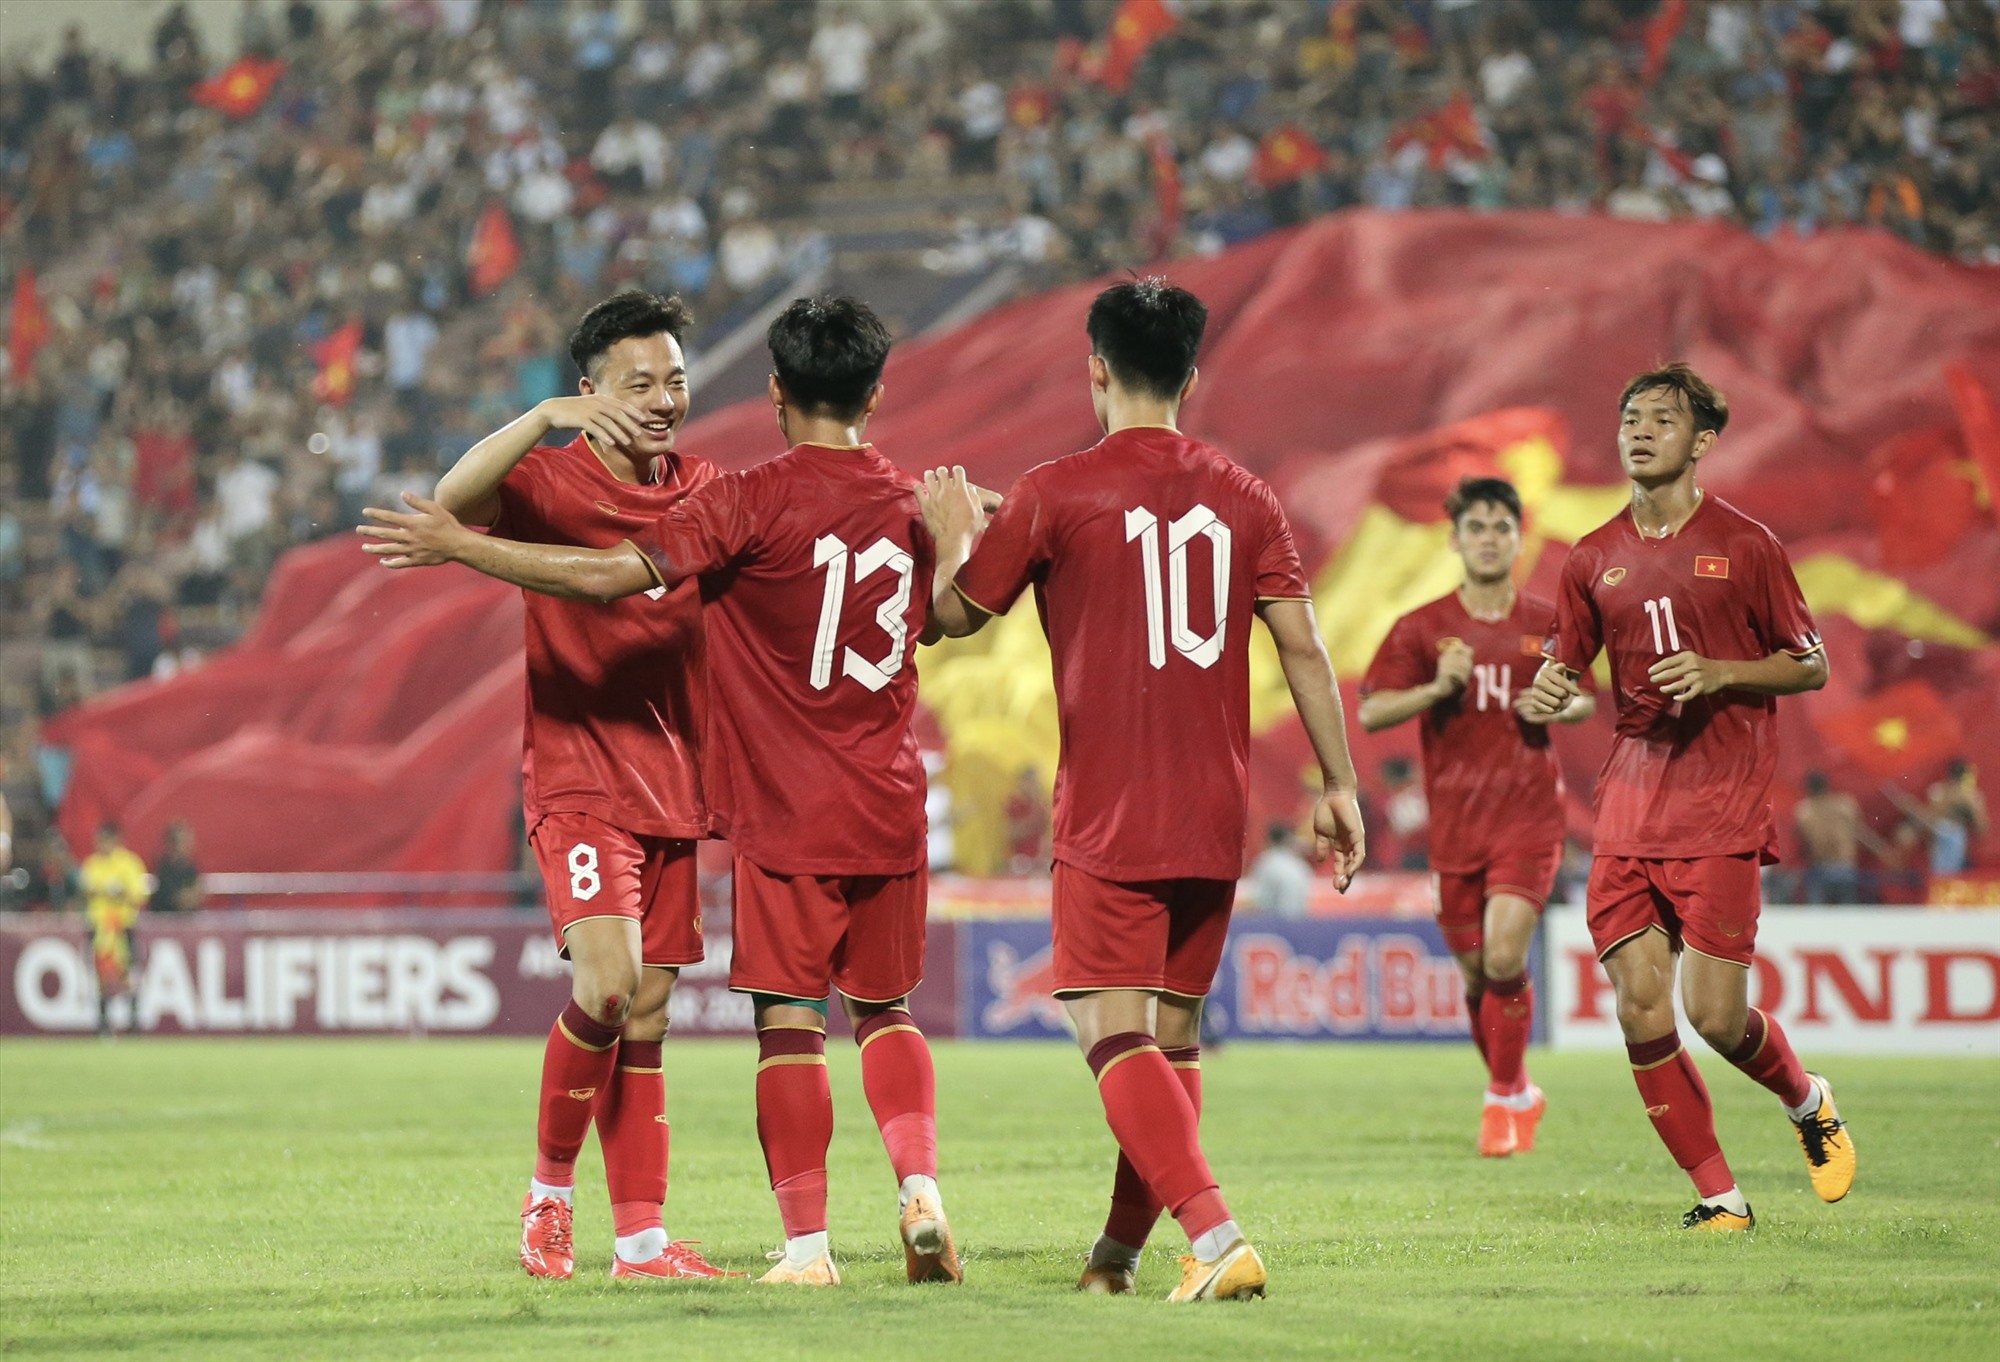 Ở những phút cuối, U23 Việt Nam liên tiếp có bàn thắng nhờ công của Hồ Văn Cường, Thanh Nhàn, Hoàng Văn Toản và Bùi Vĩ Hào, qua đó khép lại trận thắng với tỉ số 6-0 trước U23 Guam.